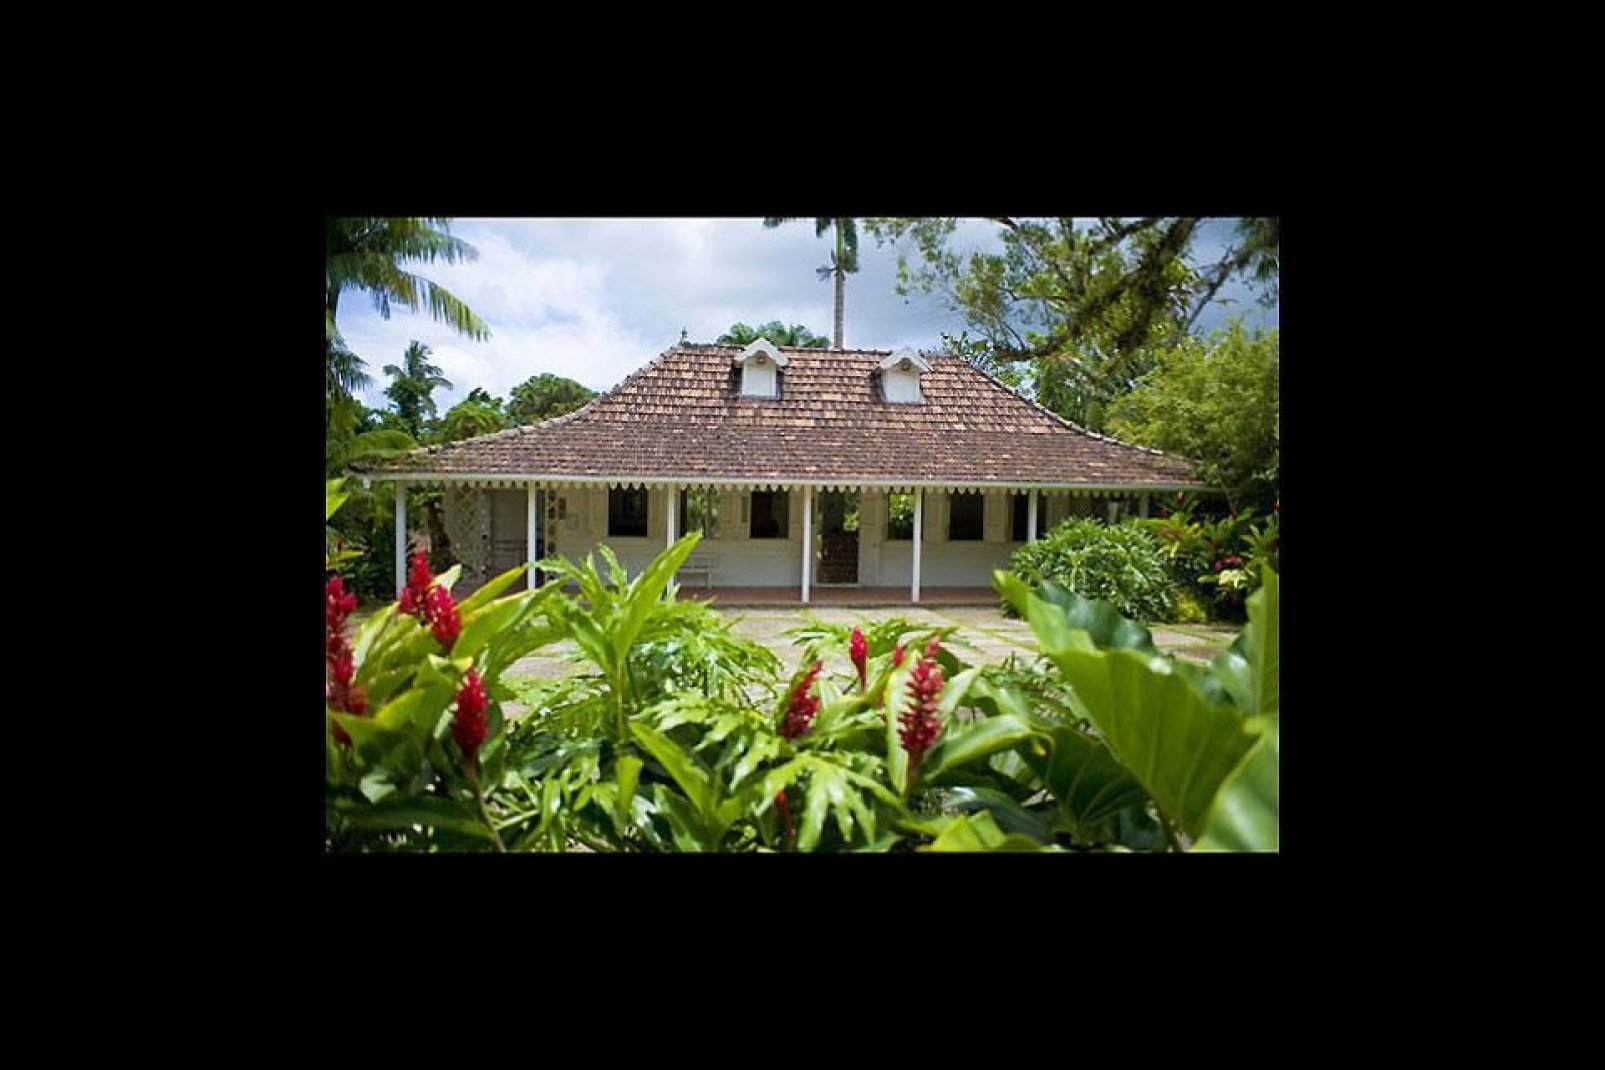 El museo regional de Historia y Etnografía de Martinica está situado en una bella vivienda burguesa del siglo XIX.